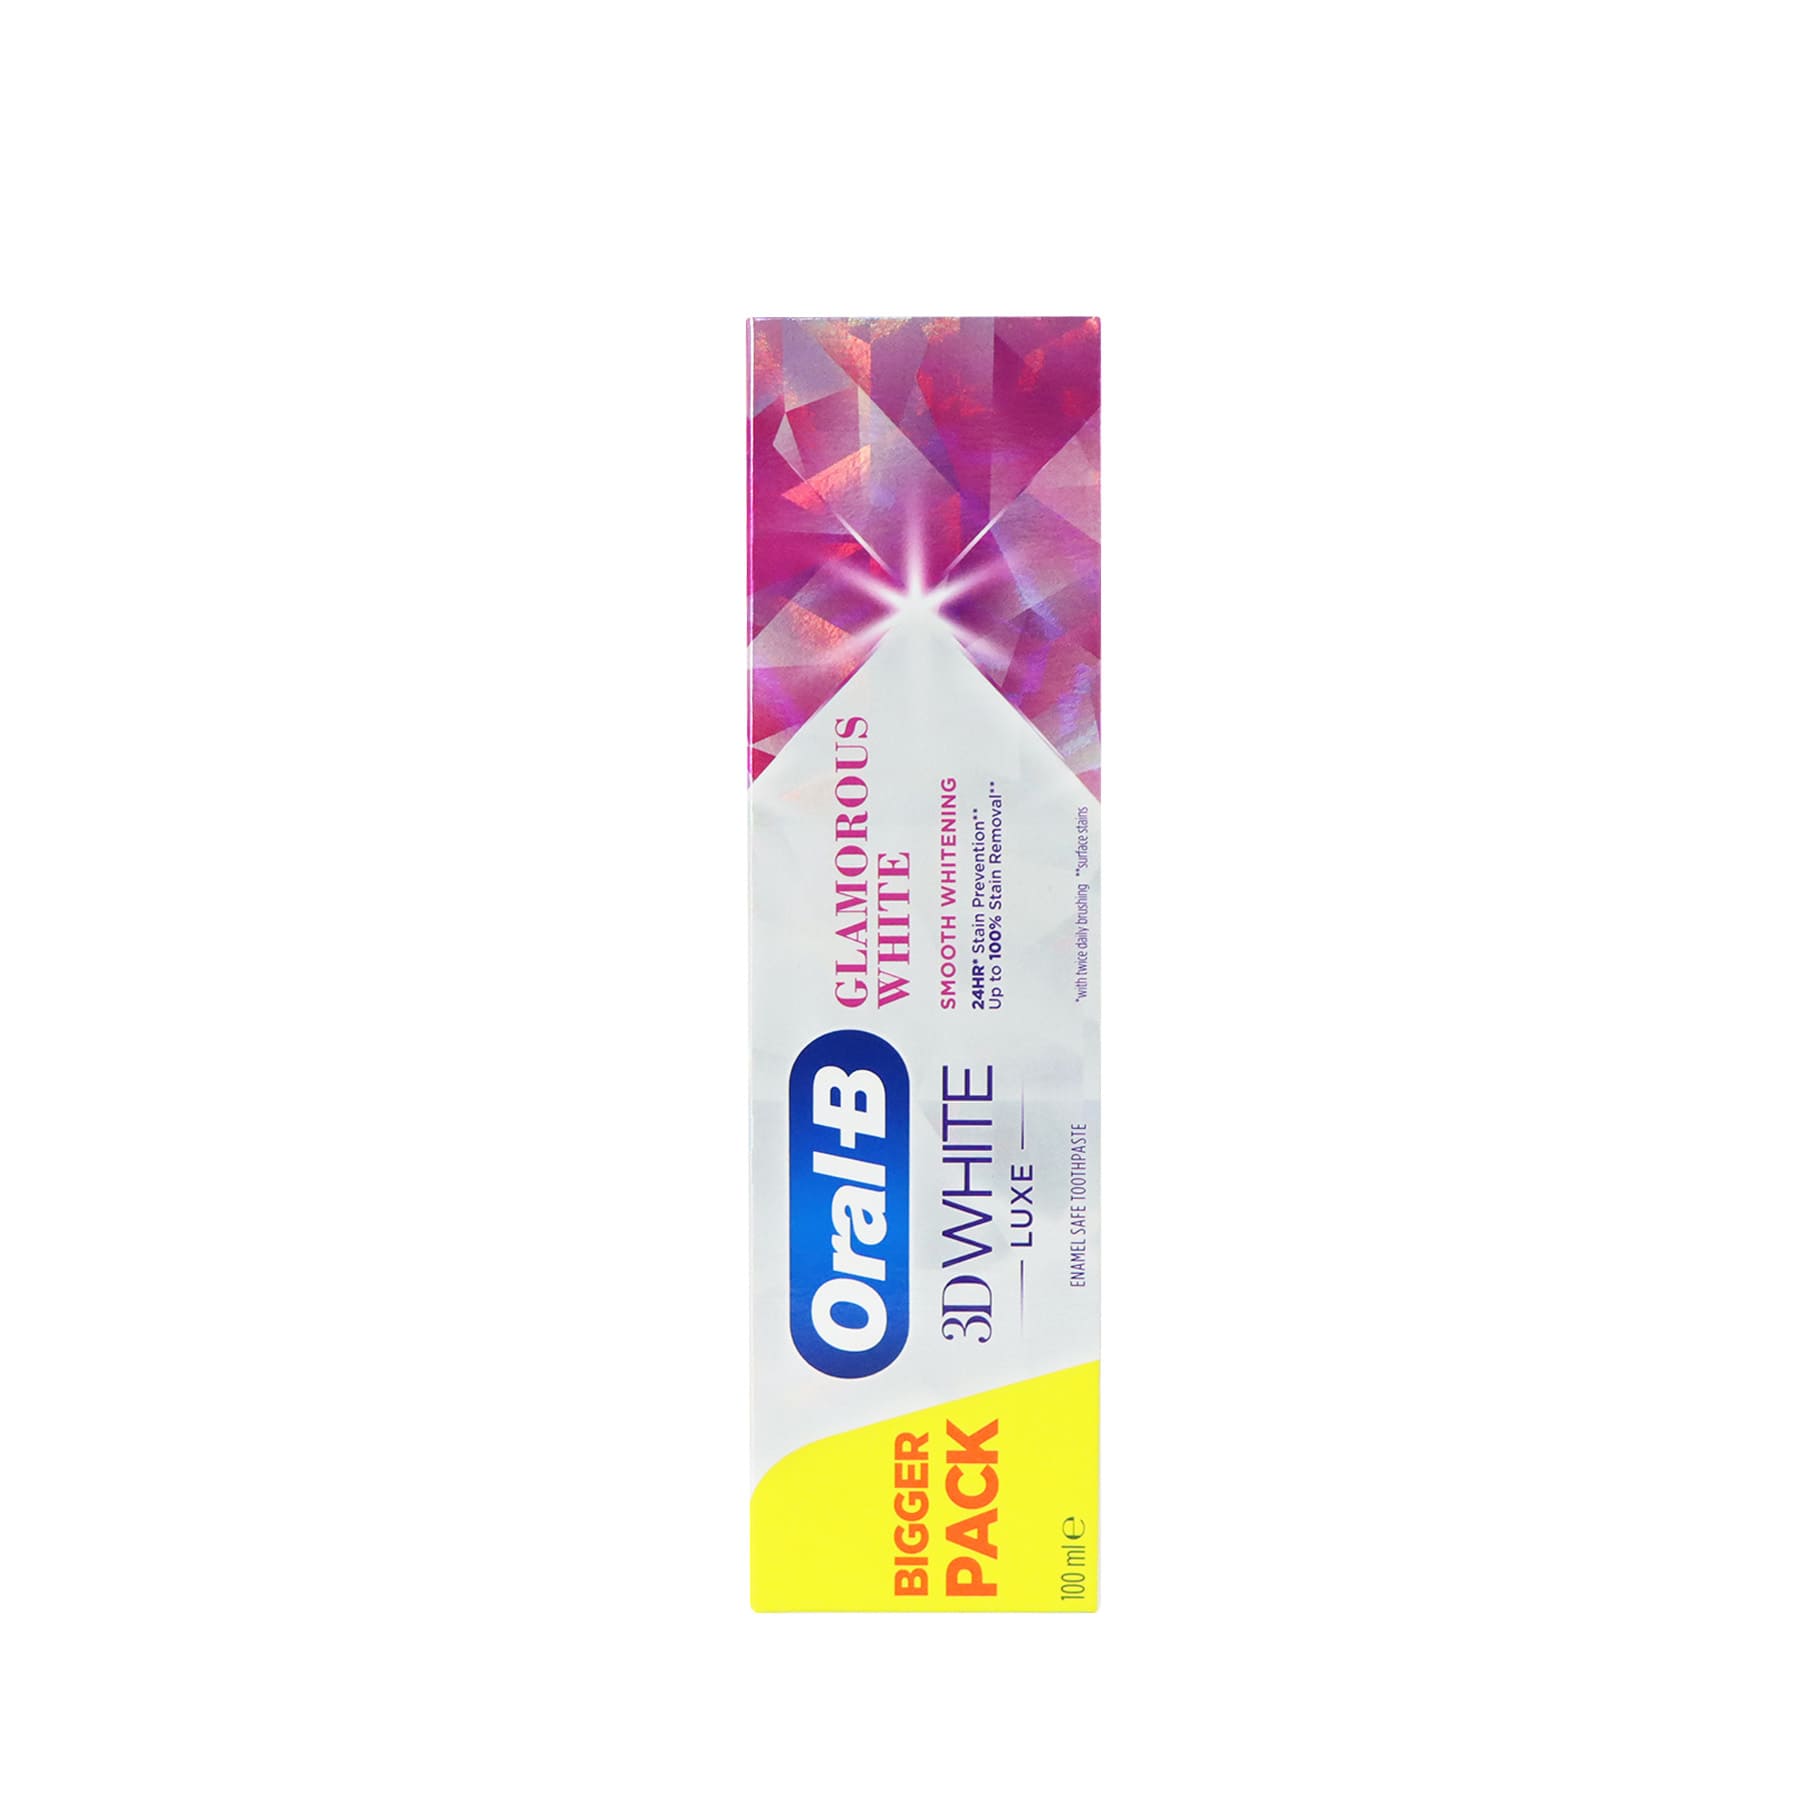 Oral-B 3D White Luxe Glamorous White Toothpaste 100ml